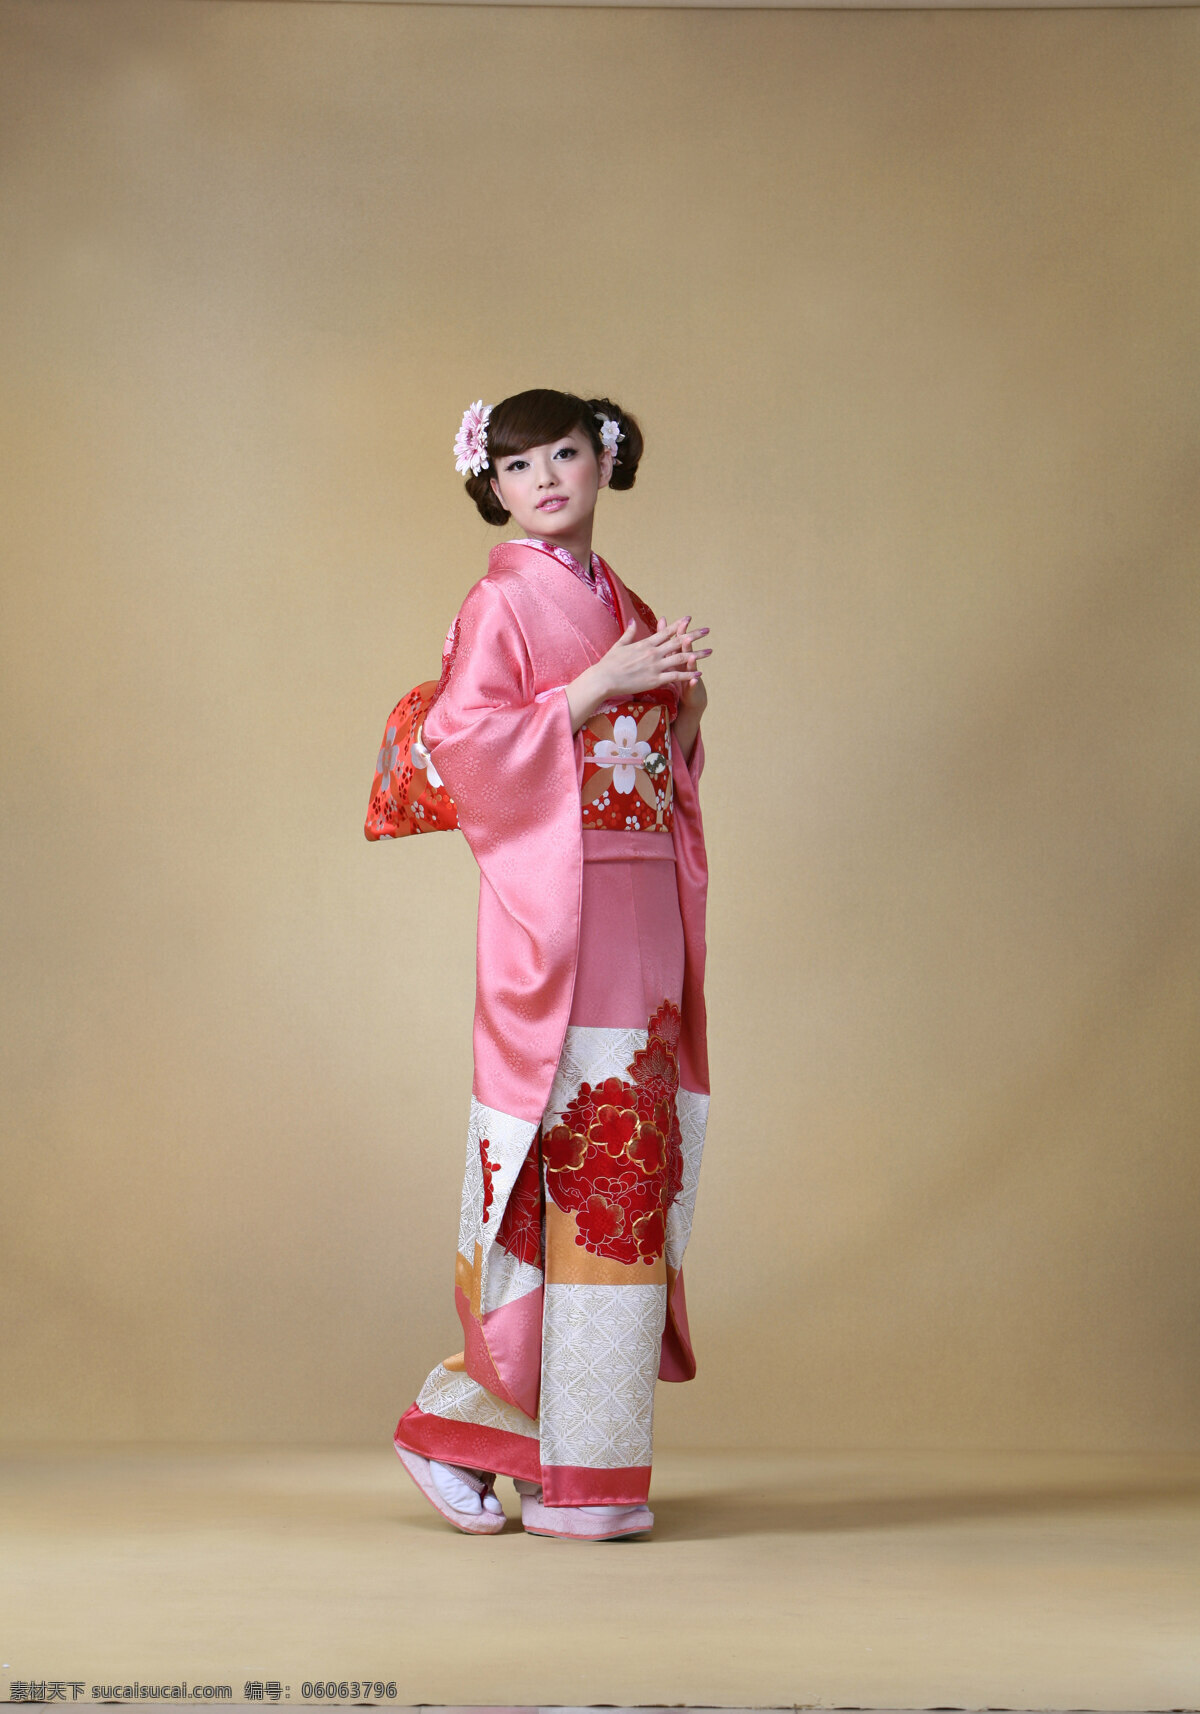 日本和服展示 日本 和服 展示 女装 女性 女人 高清 少女 女性女人 人物图库